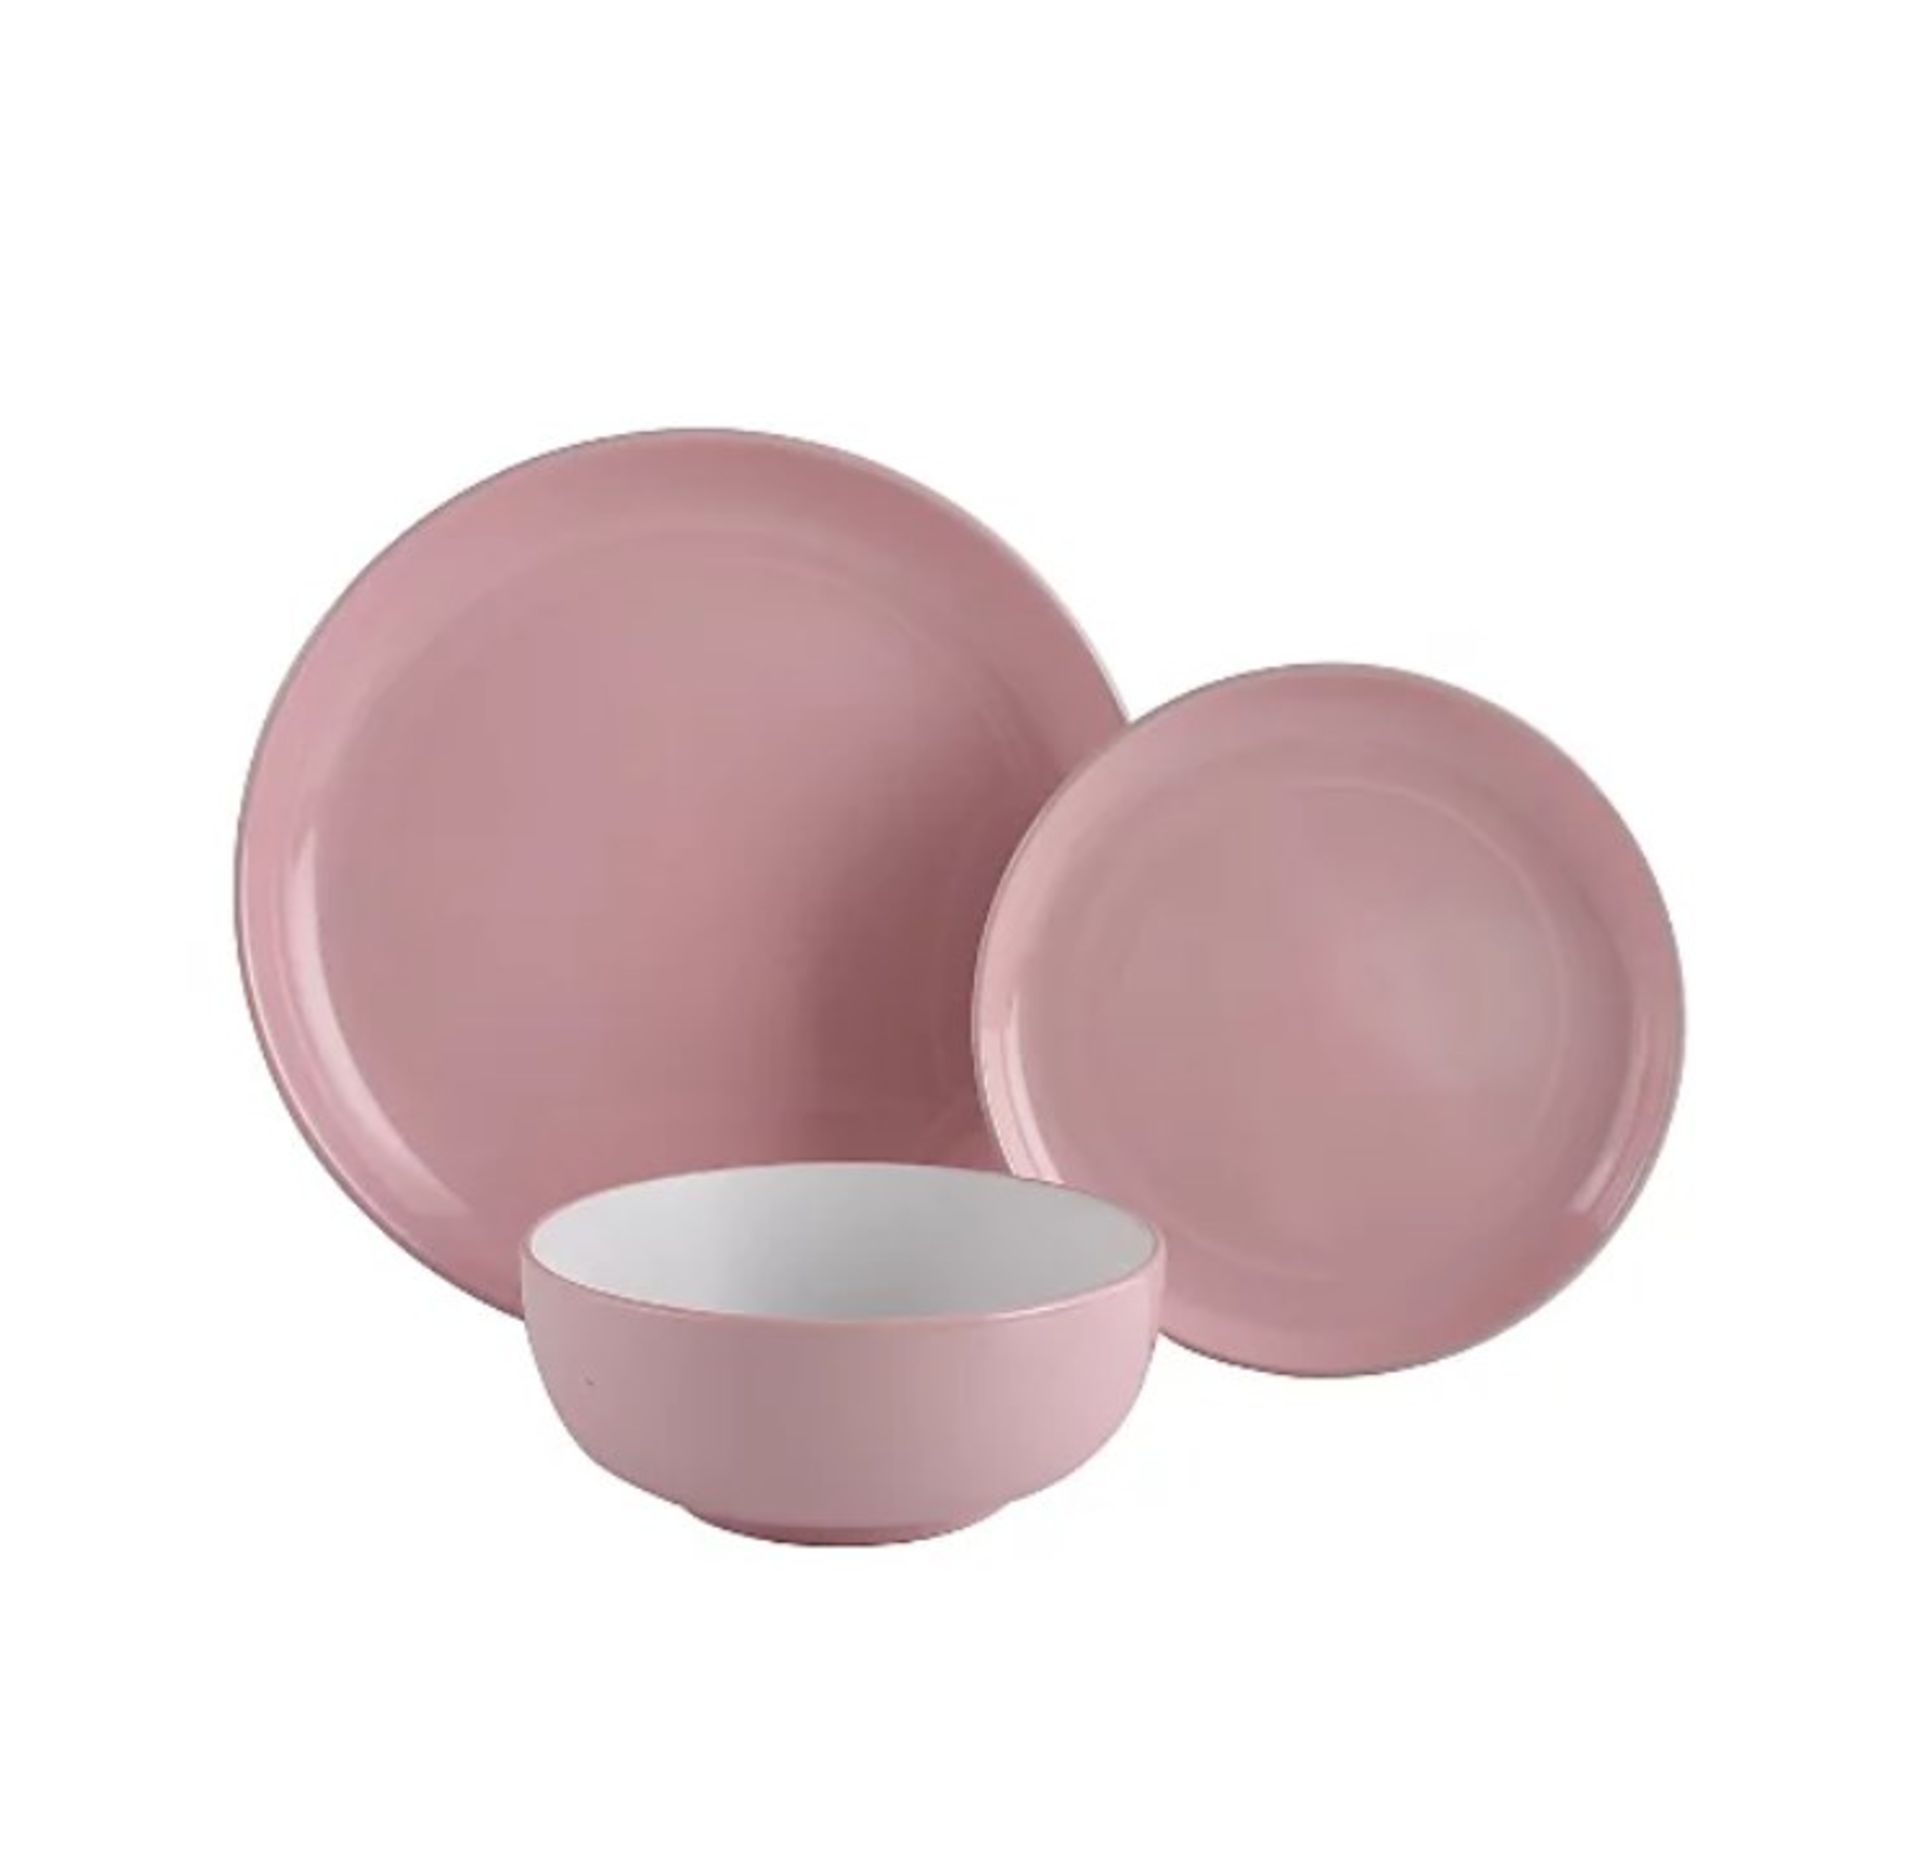 Description: (57/10D) Lot RRP £60 3x Stoneware Pink Two Tone 12 Piece Dinner Set RRP £20 Each Lot